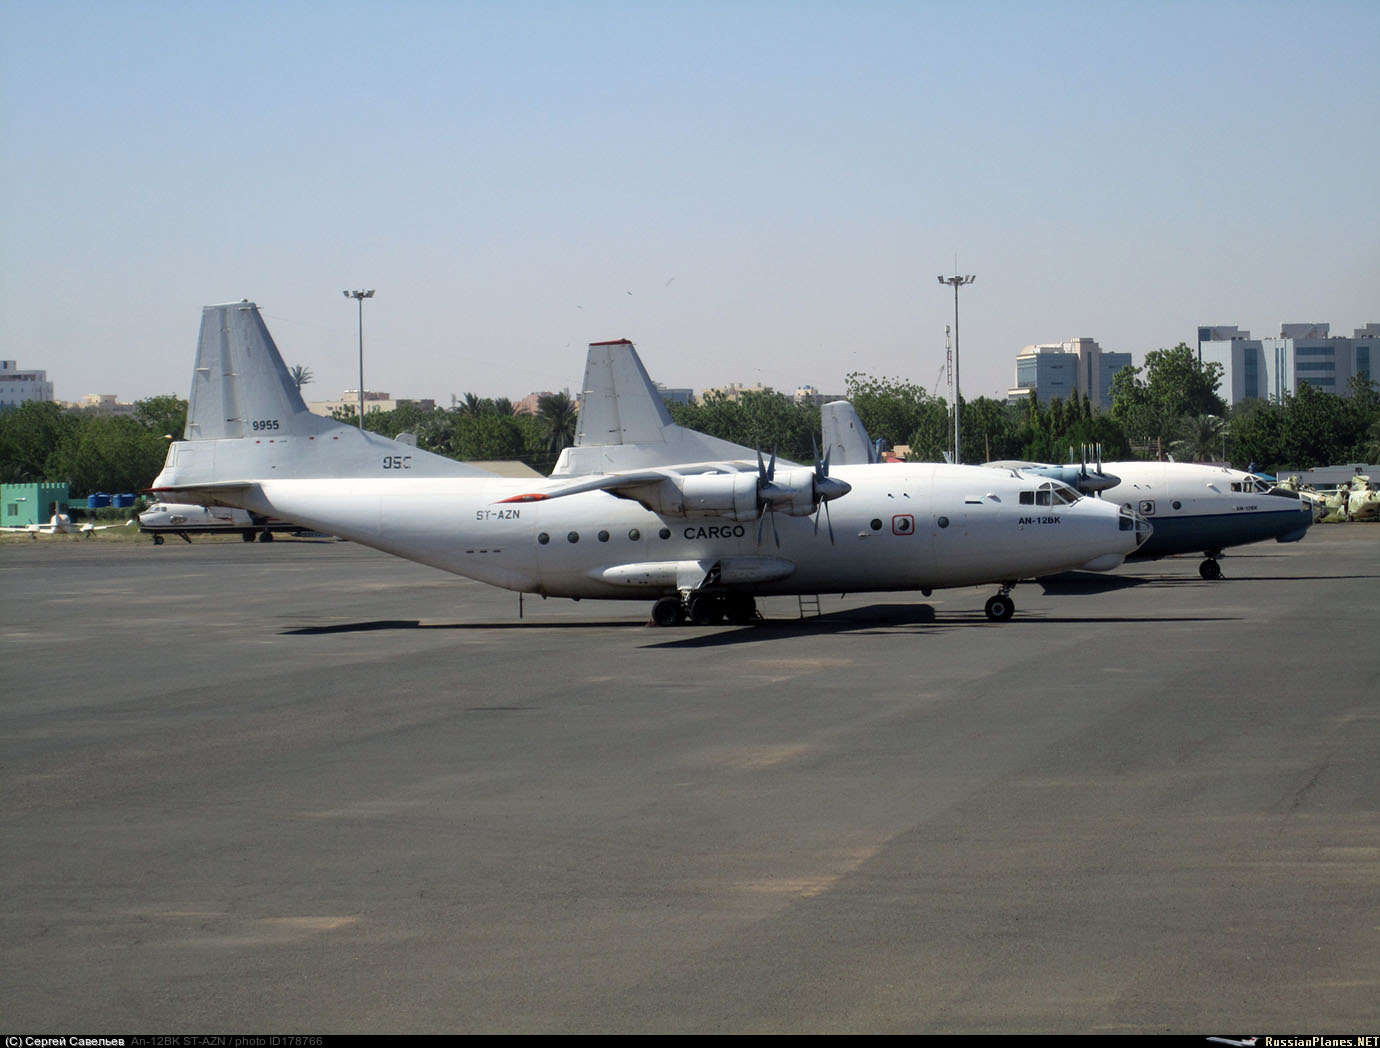 صور القوات الجوية السودانية [ Sudan Air Force ]  - صفحة 4 178766